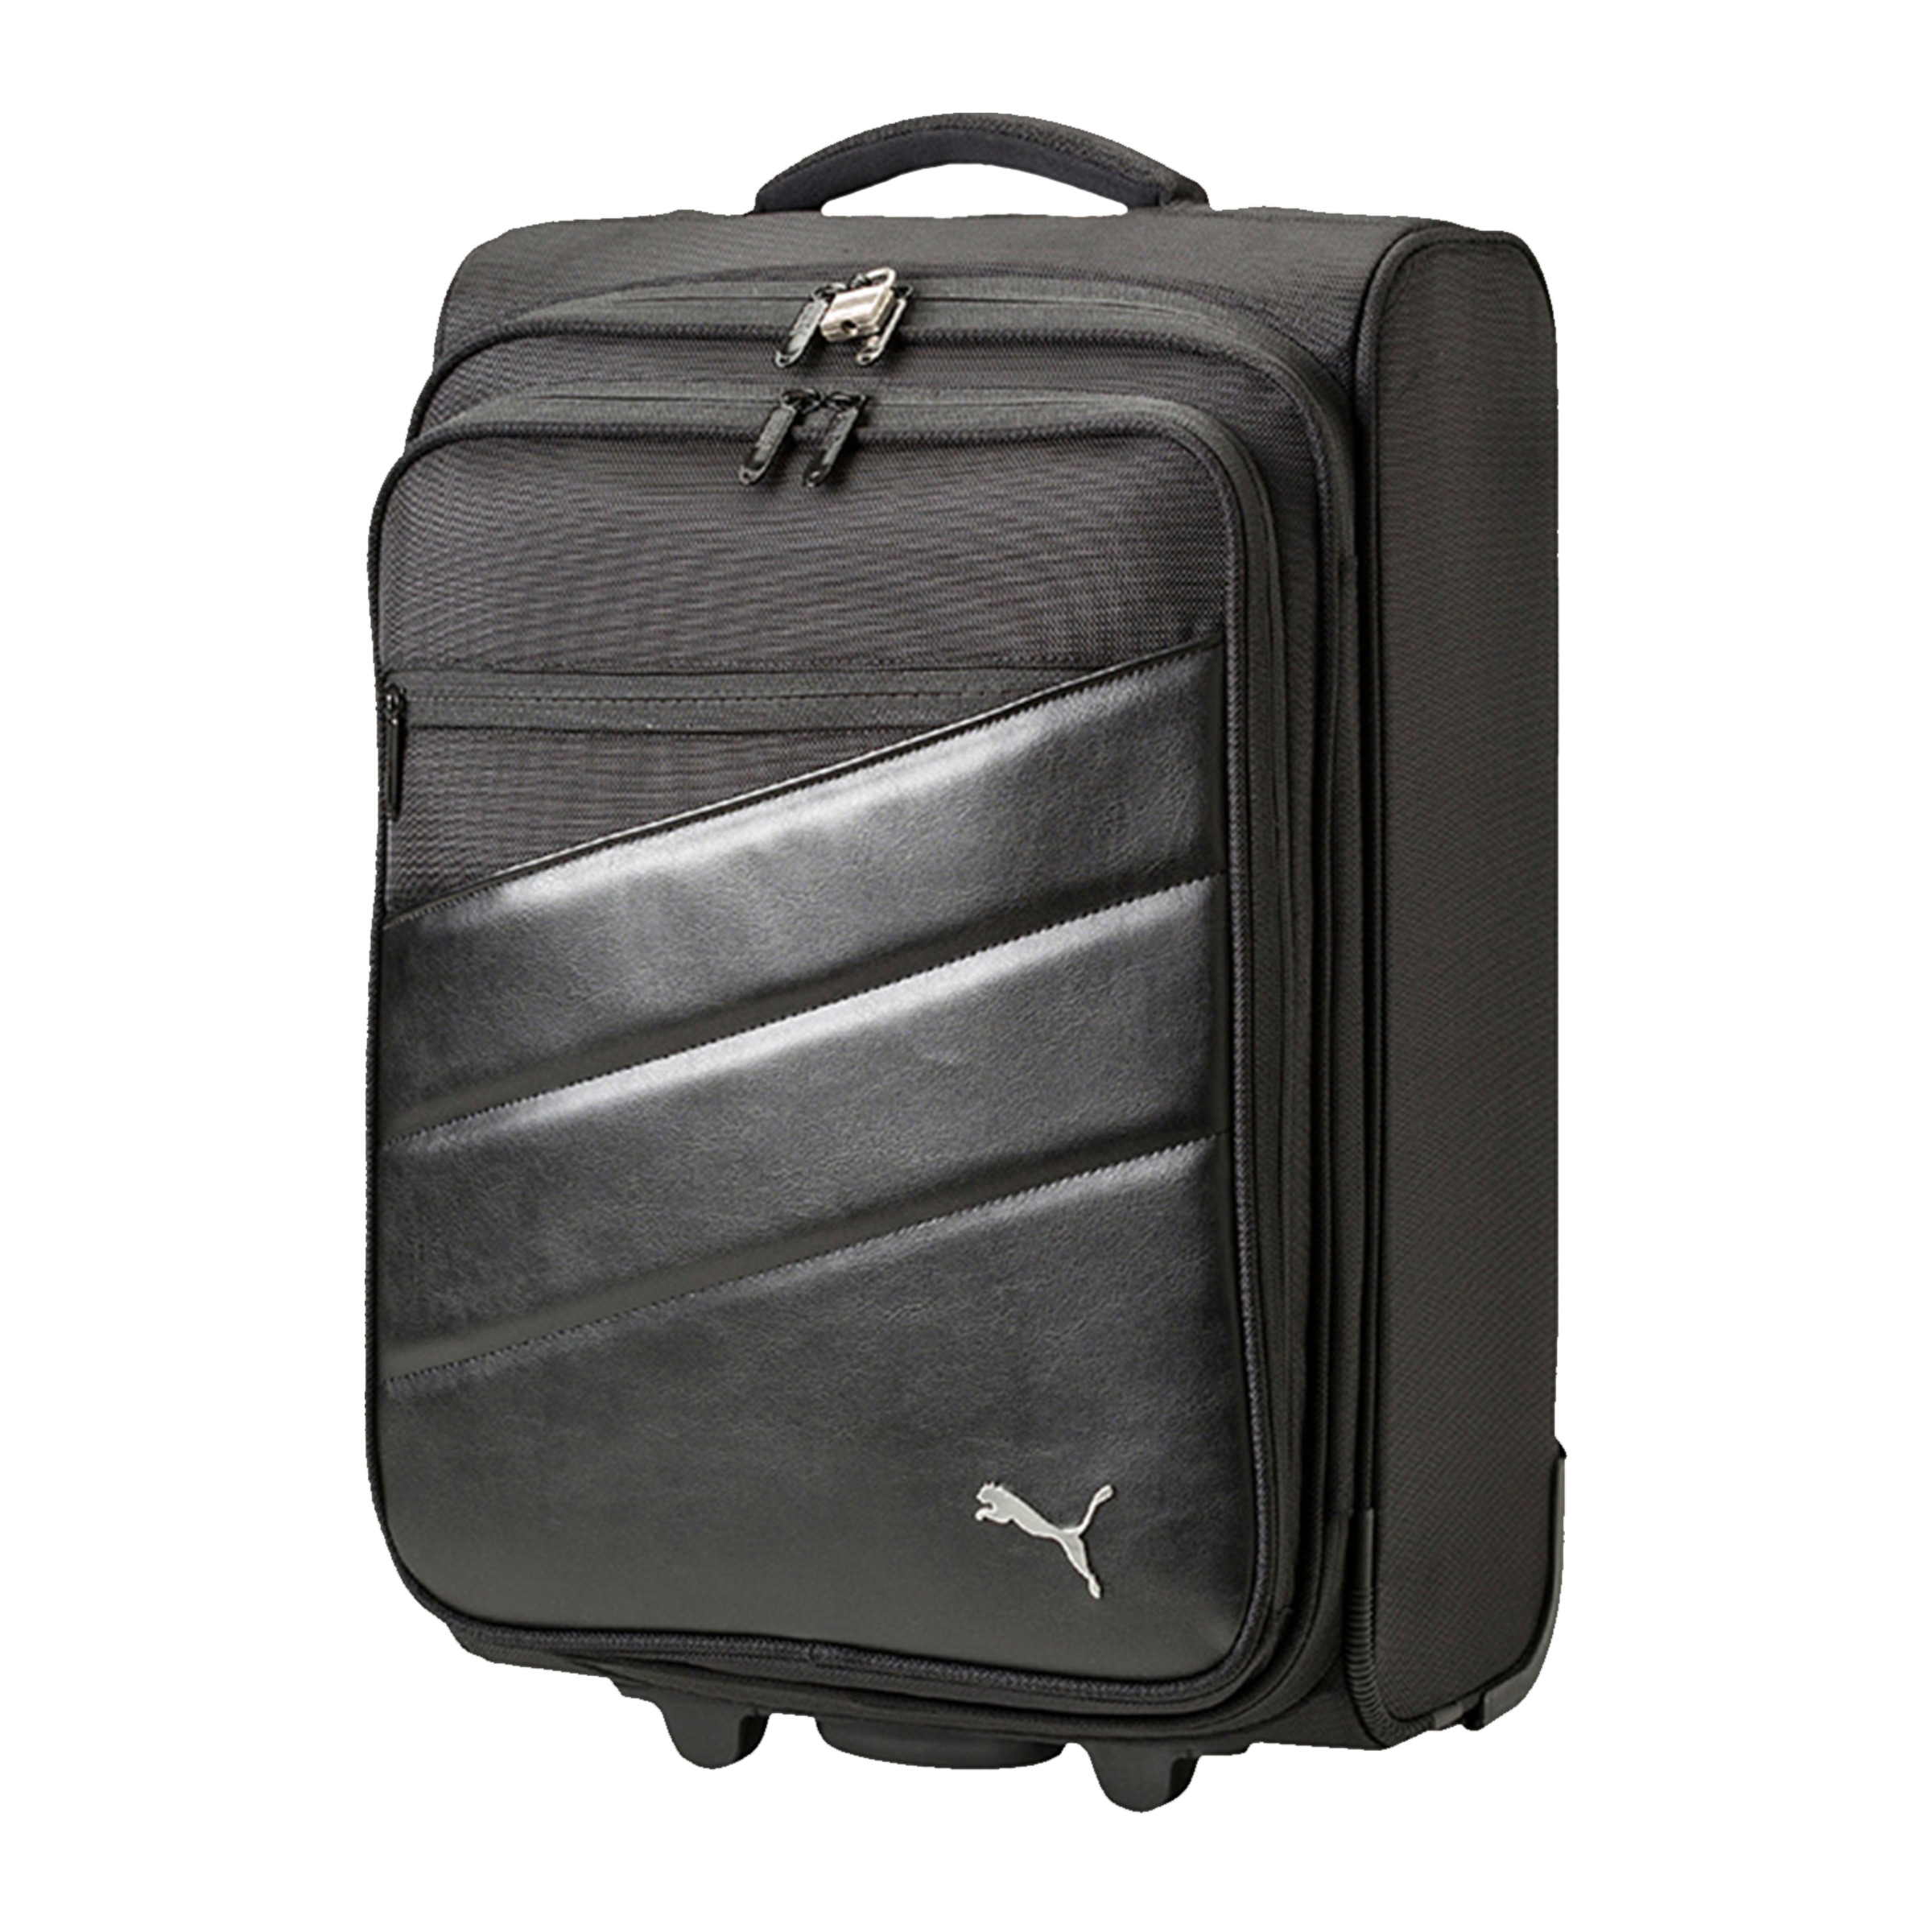 PUMA Team Trolley Bag Suitcase Black 